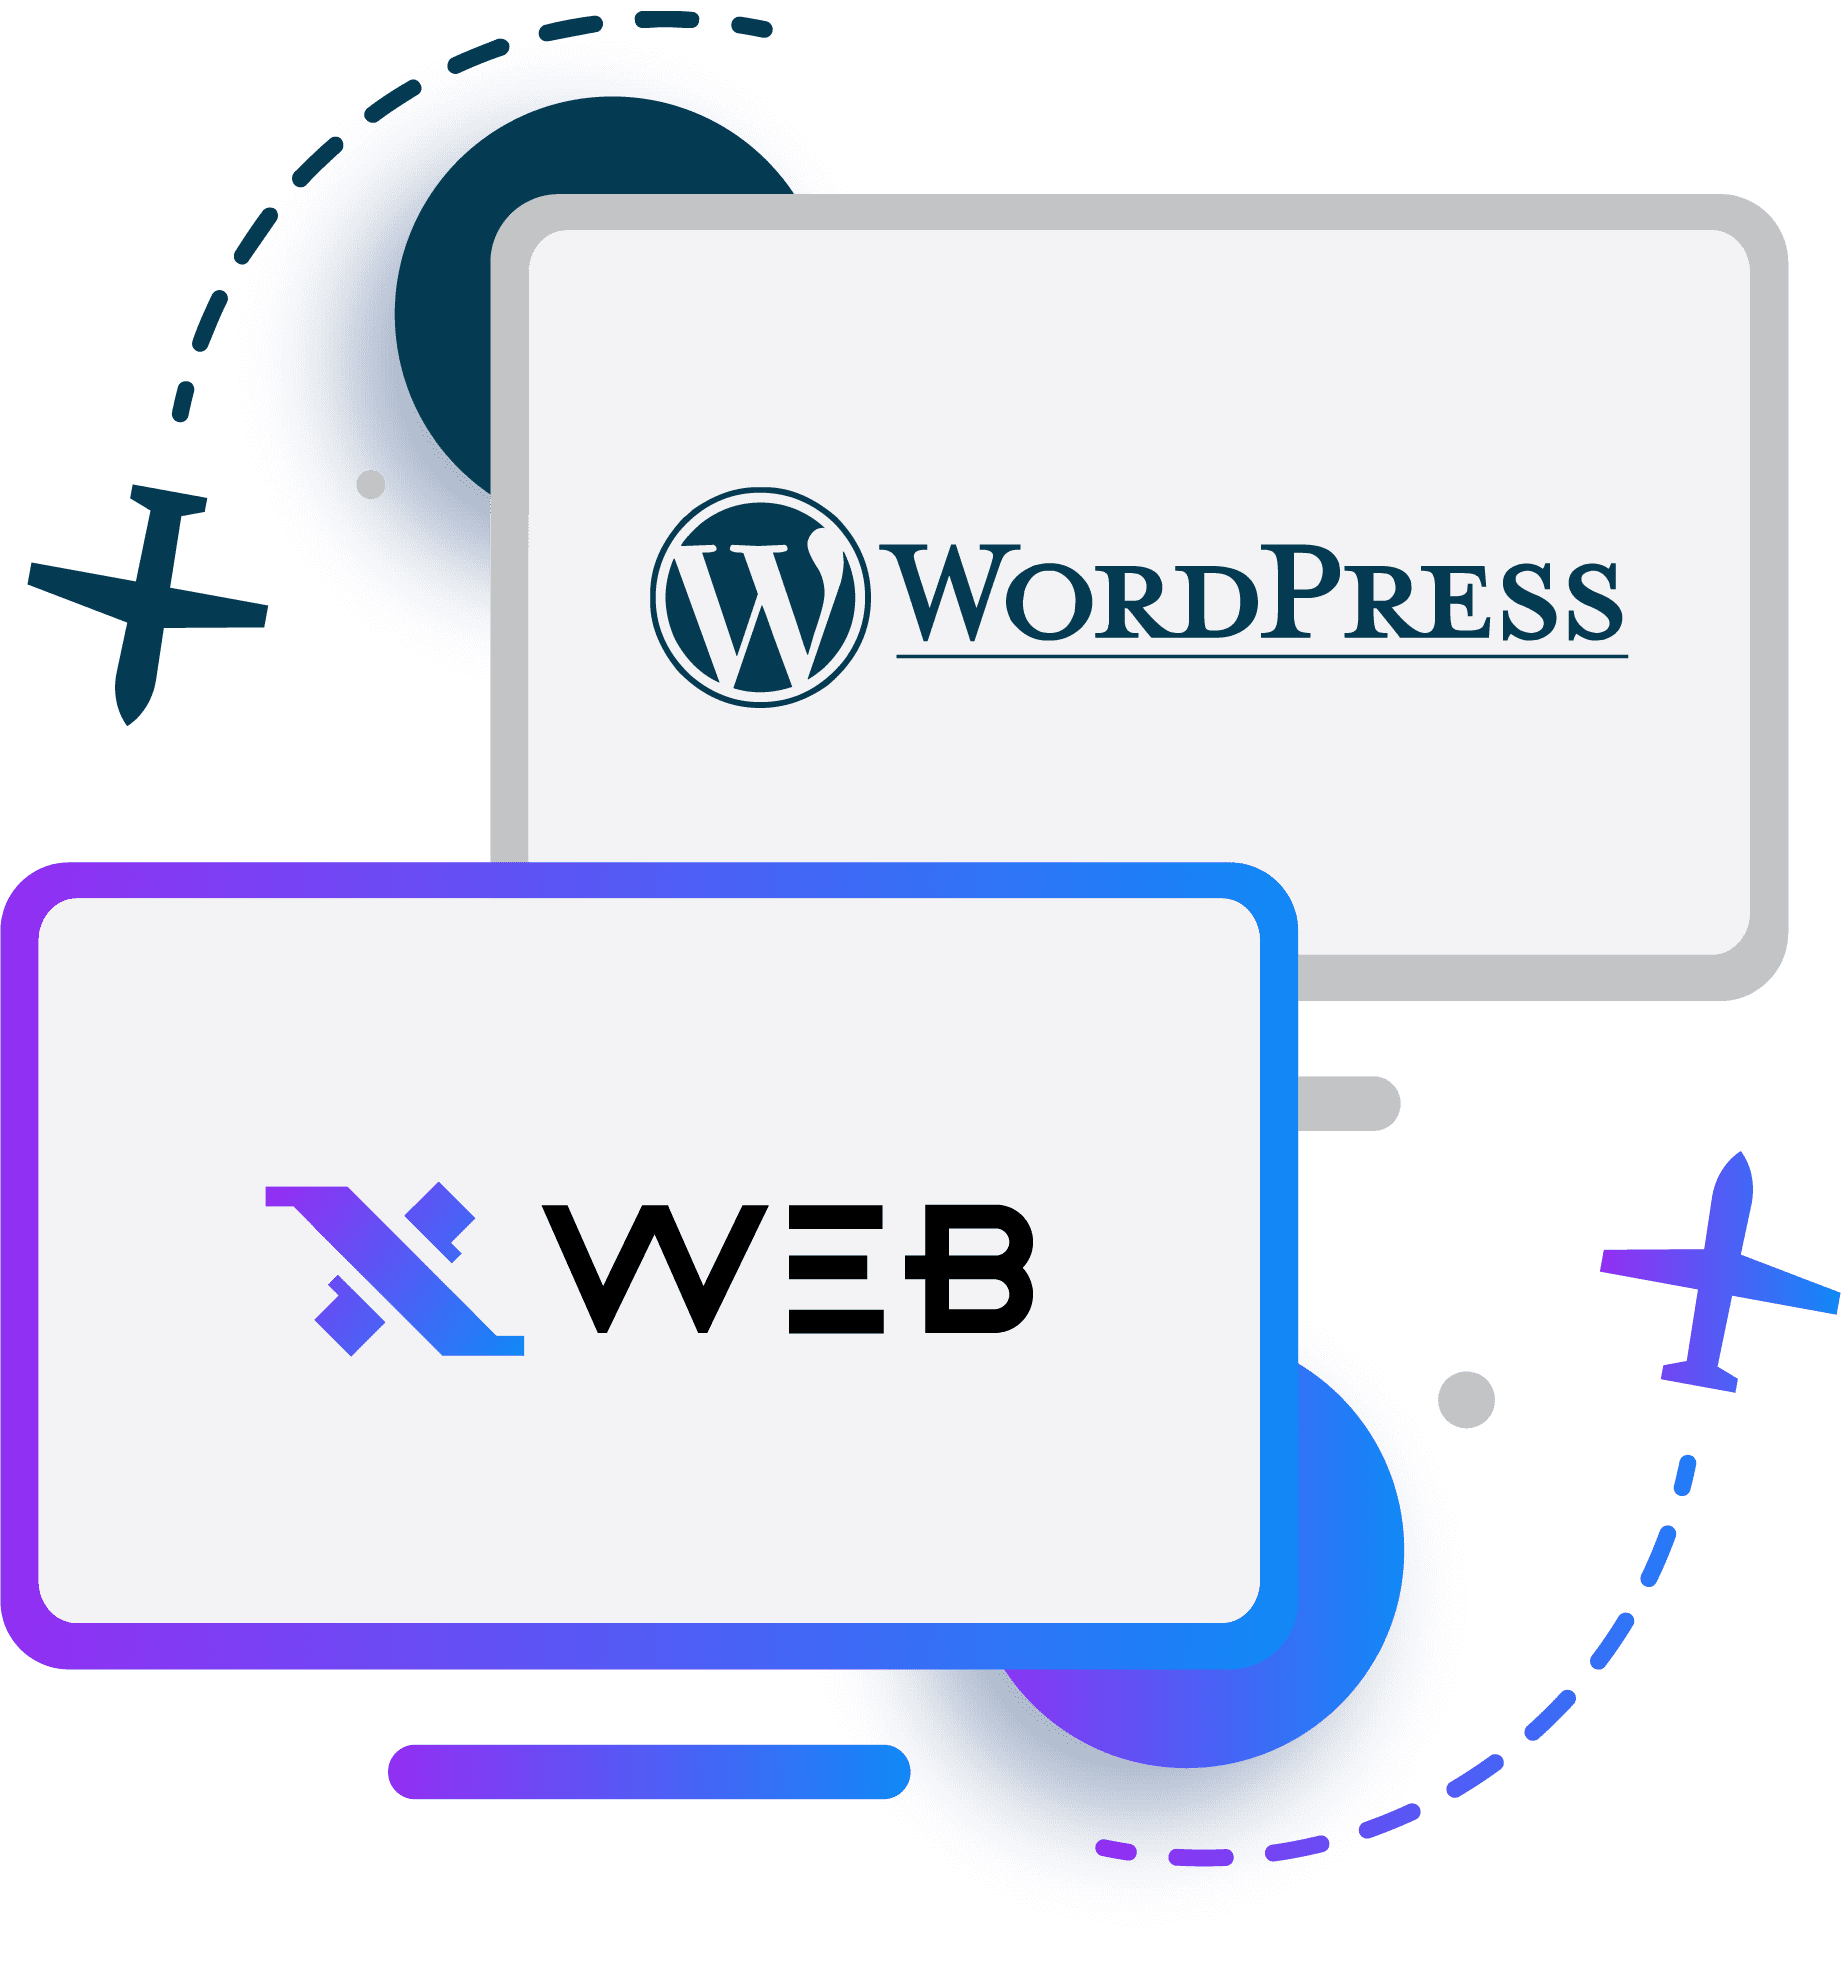 Wordpress-Xweb